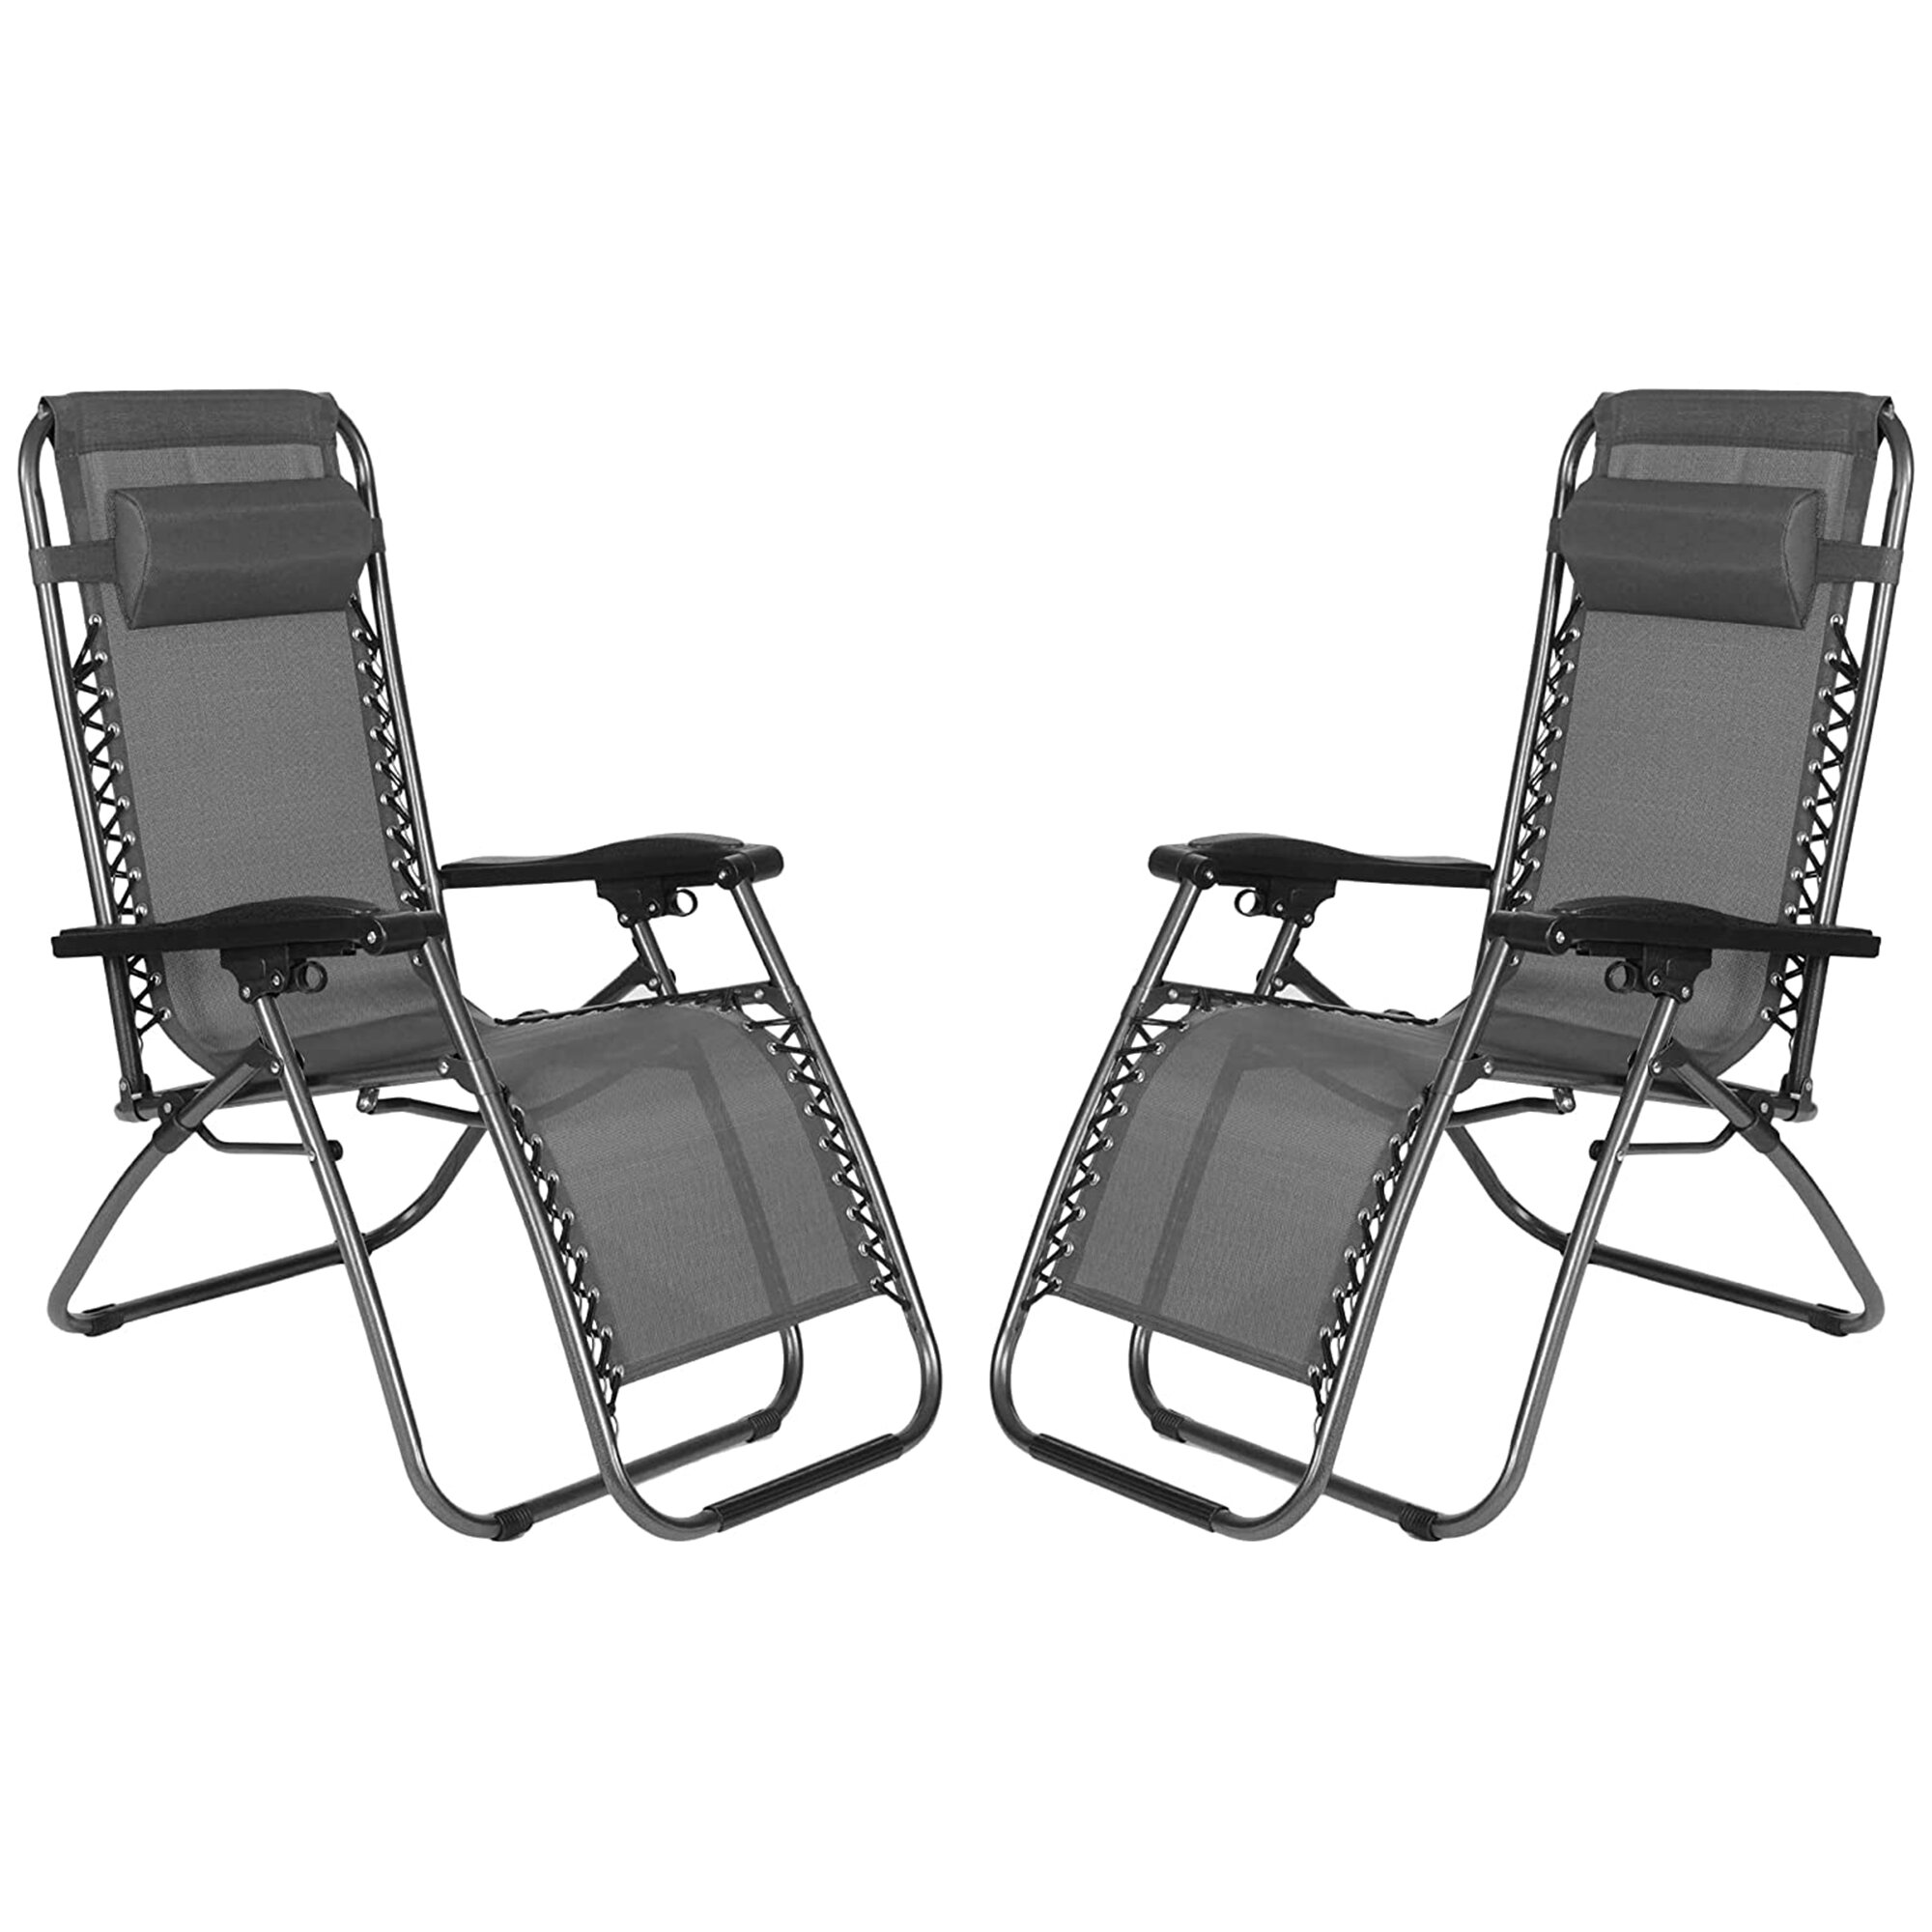 https://assets.wfcdn.com/im/19866291/compr-r85/1674/167469497/abdrahman-folding-zero-gravity-chair.jpg